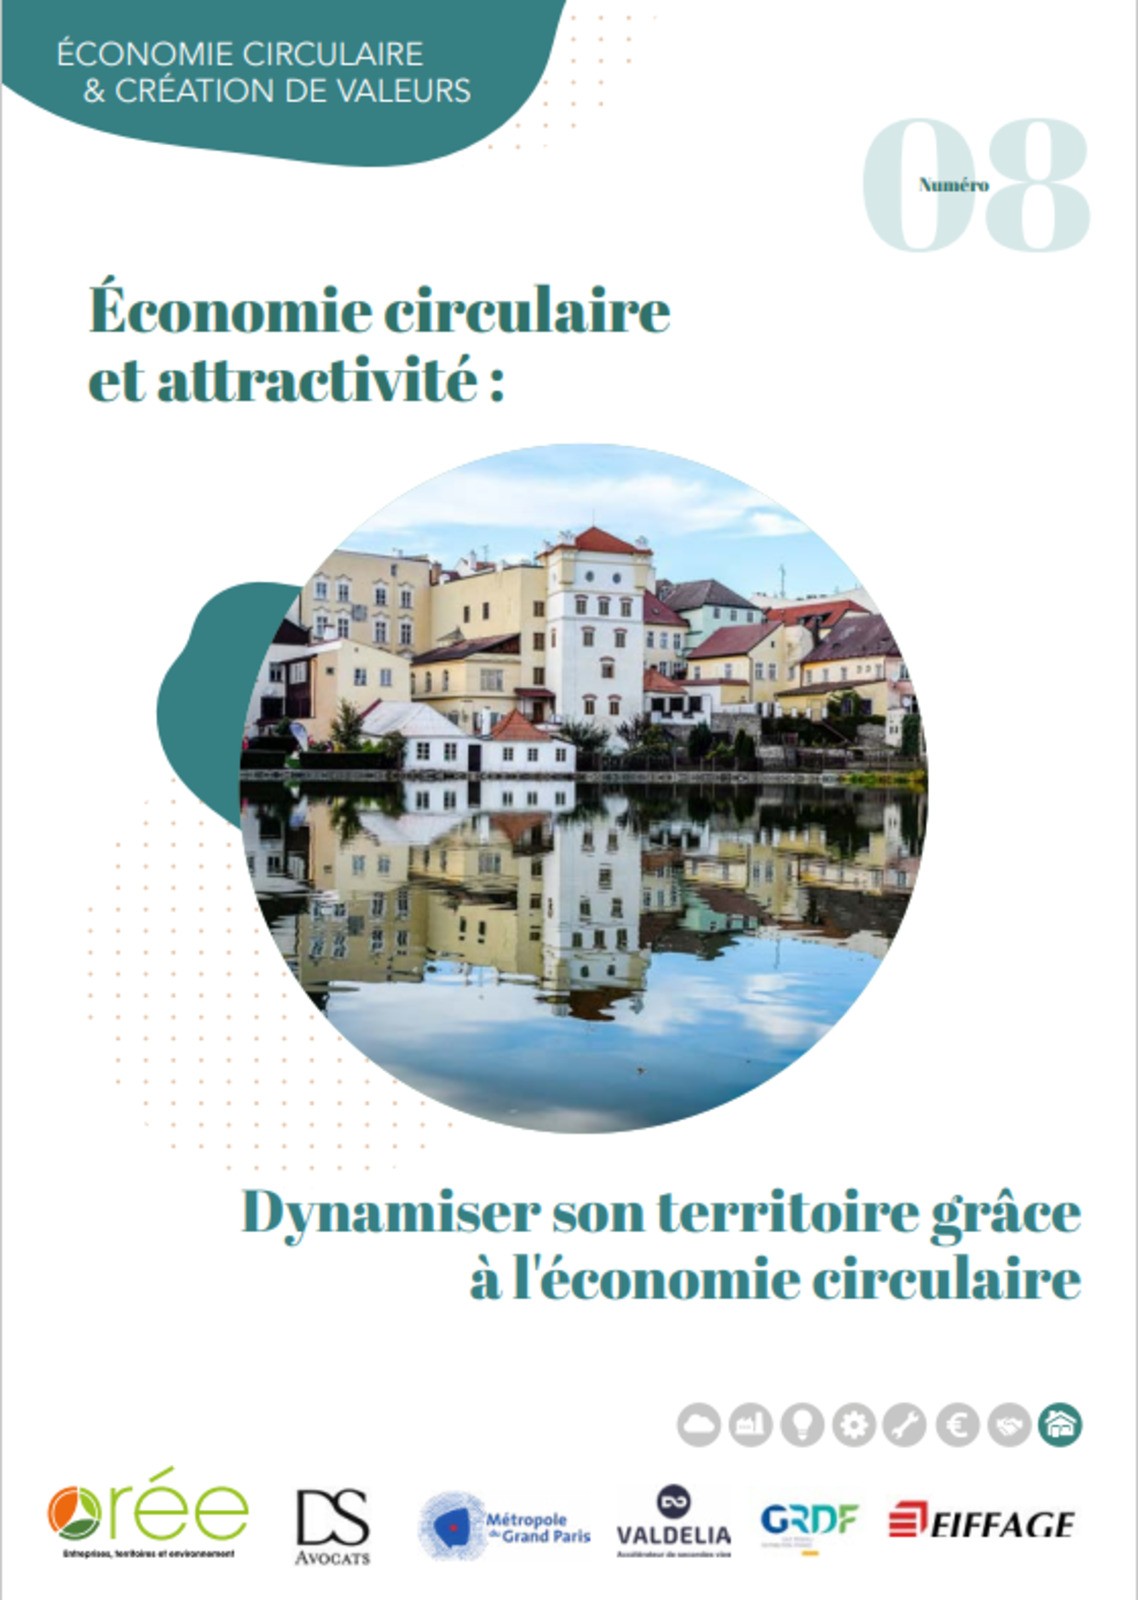 LIVRET « Économie circulaire et attractivité » proposé par Orée et ses partenaires